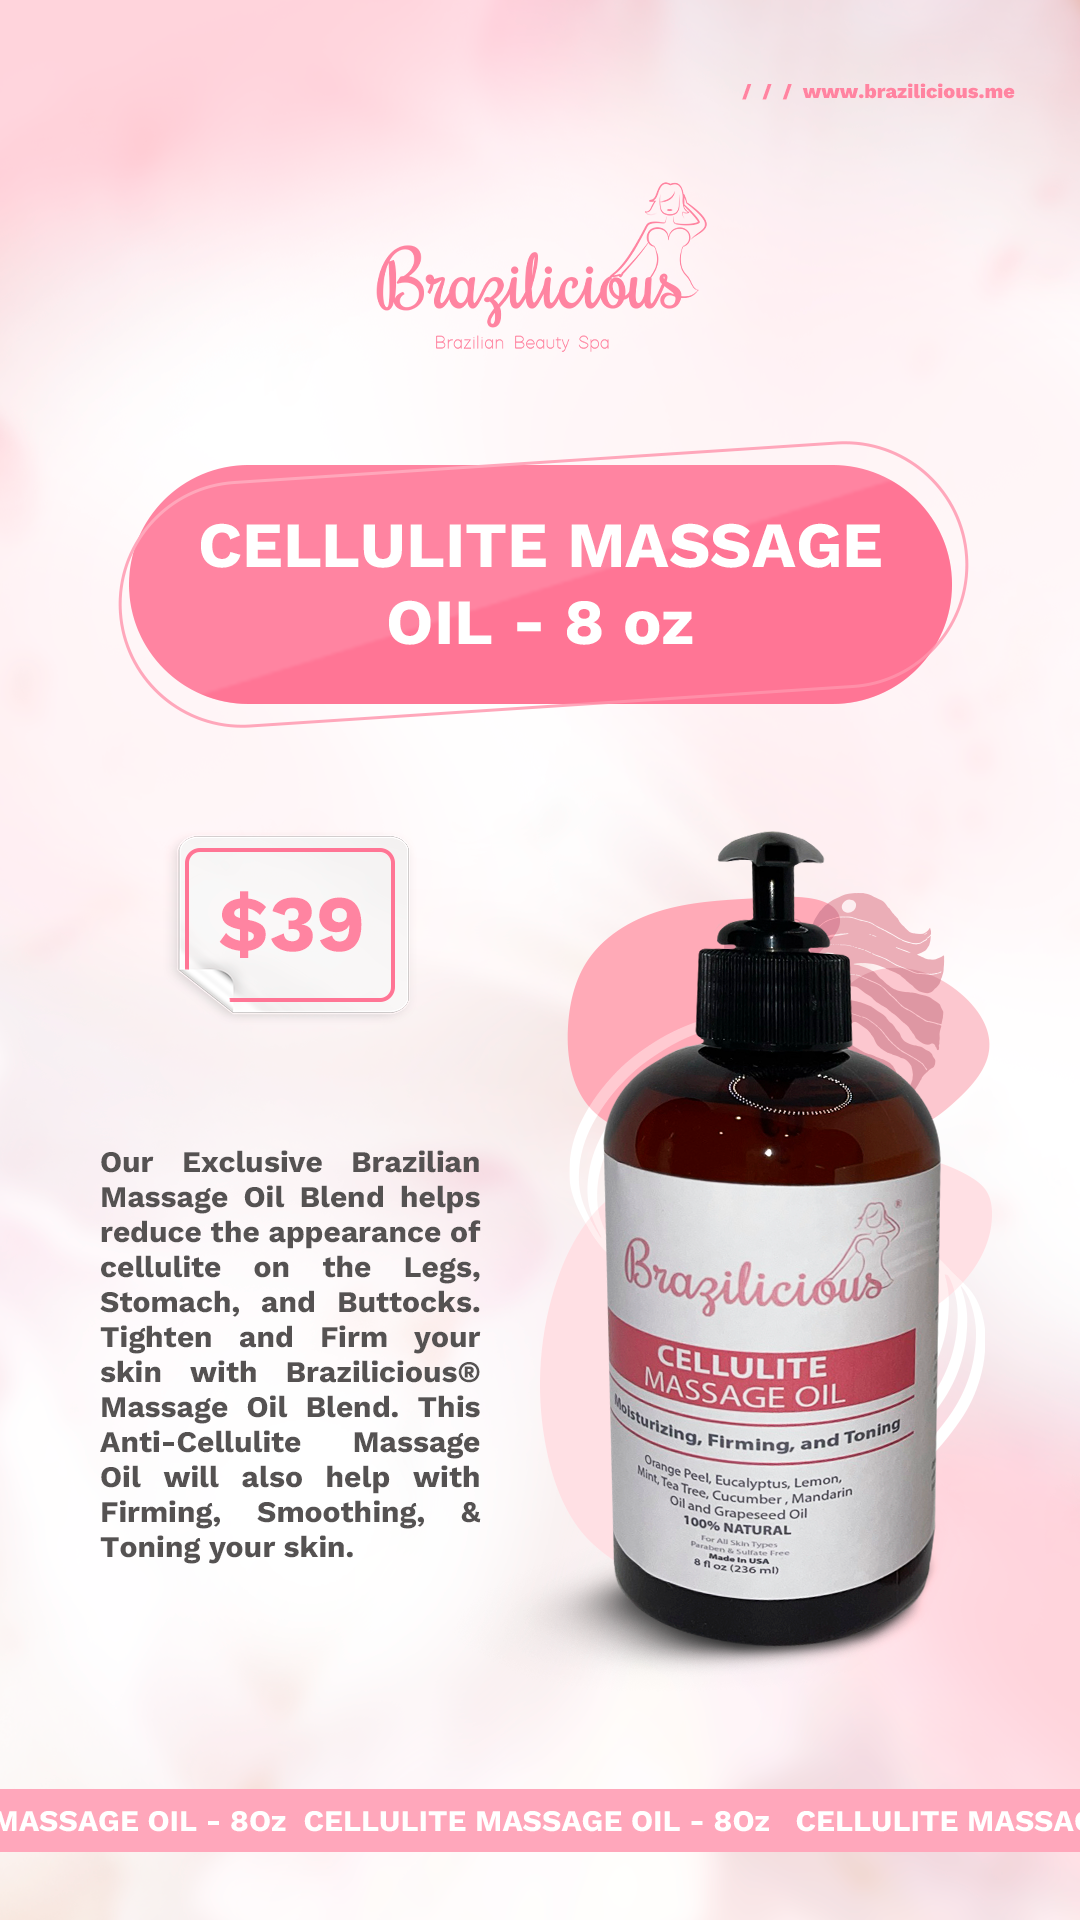 Cellulite Massage Oil - 8 oz